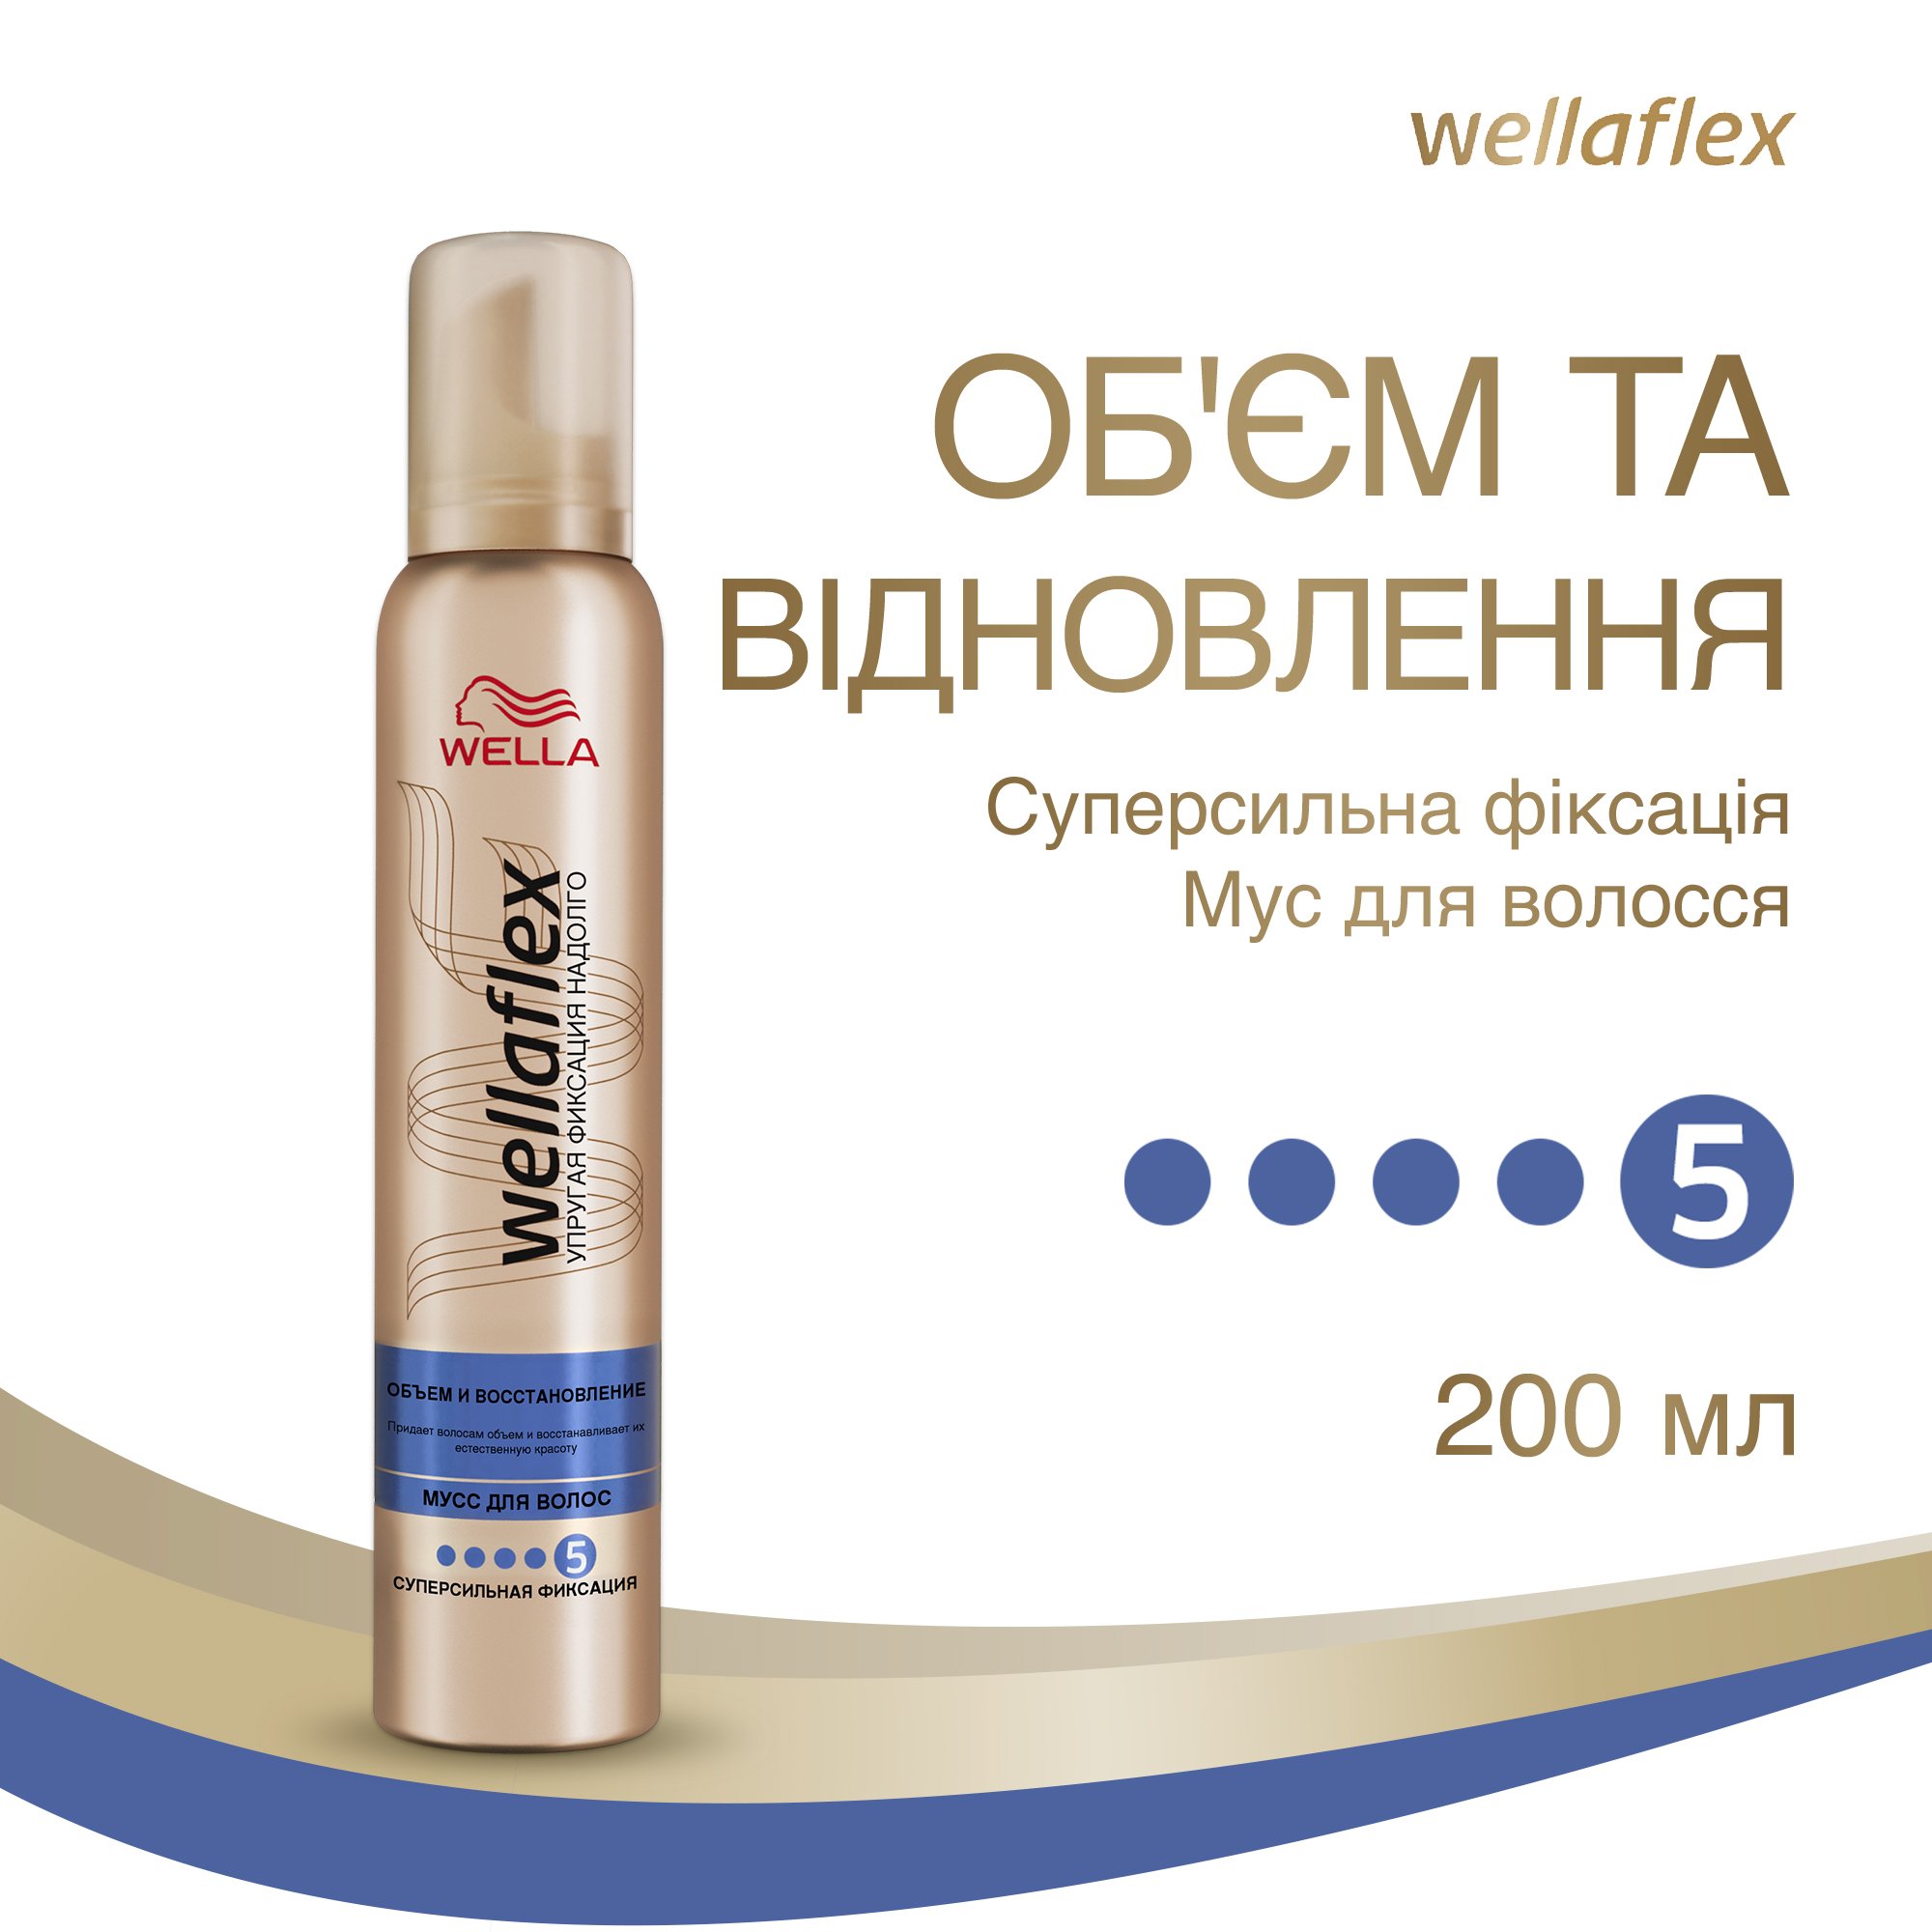 Мусс для волос Wellaflex Объем и восстановление Суперсильной фиксации, 200 мл - фото 2